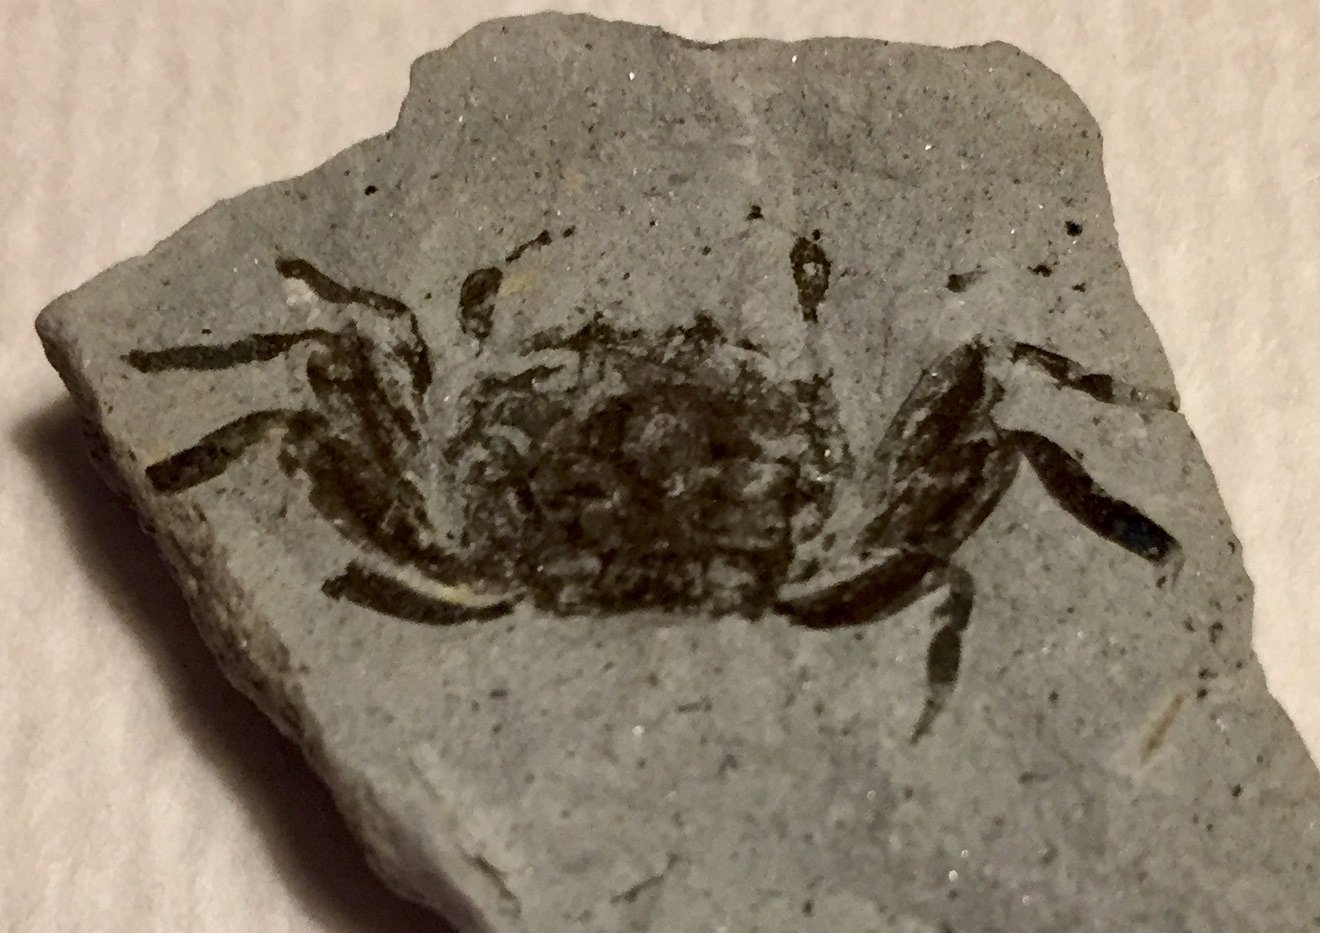 A half of a crab...